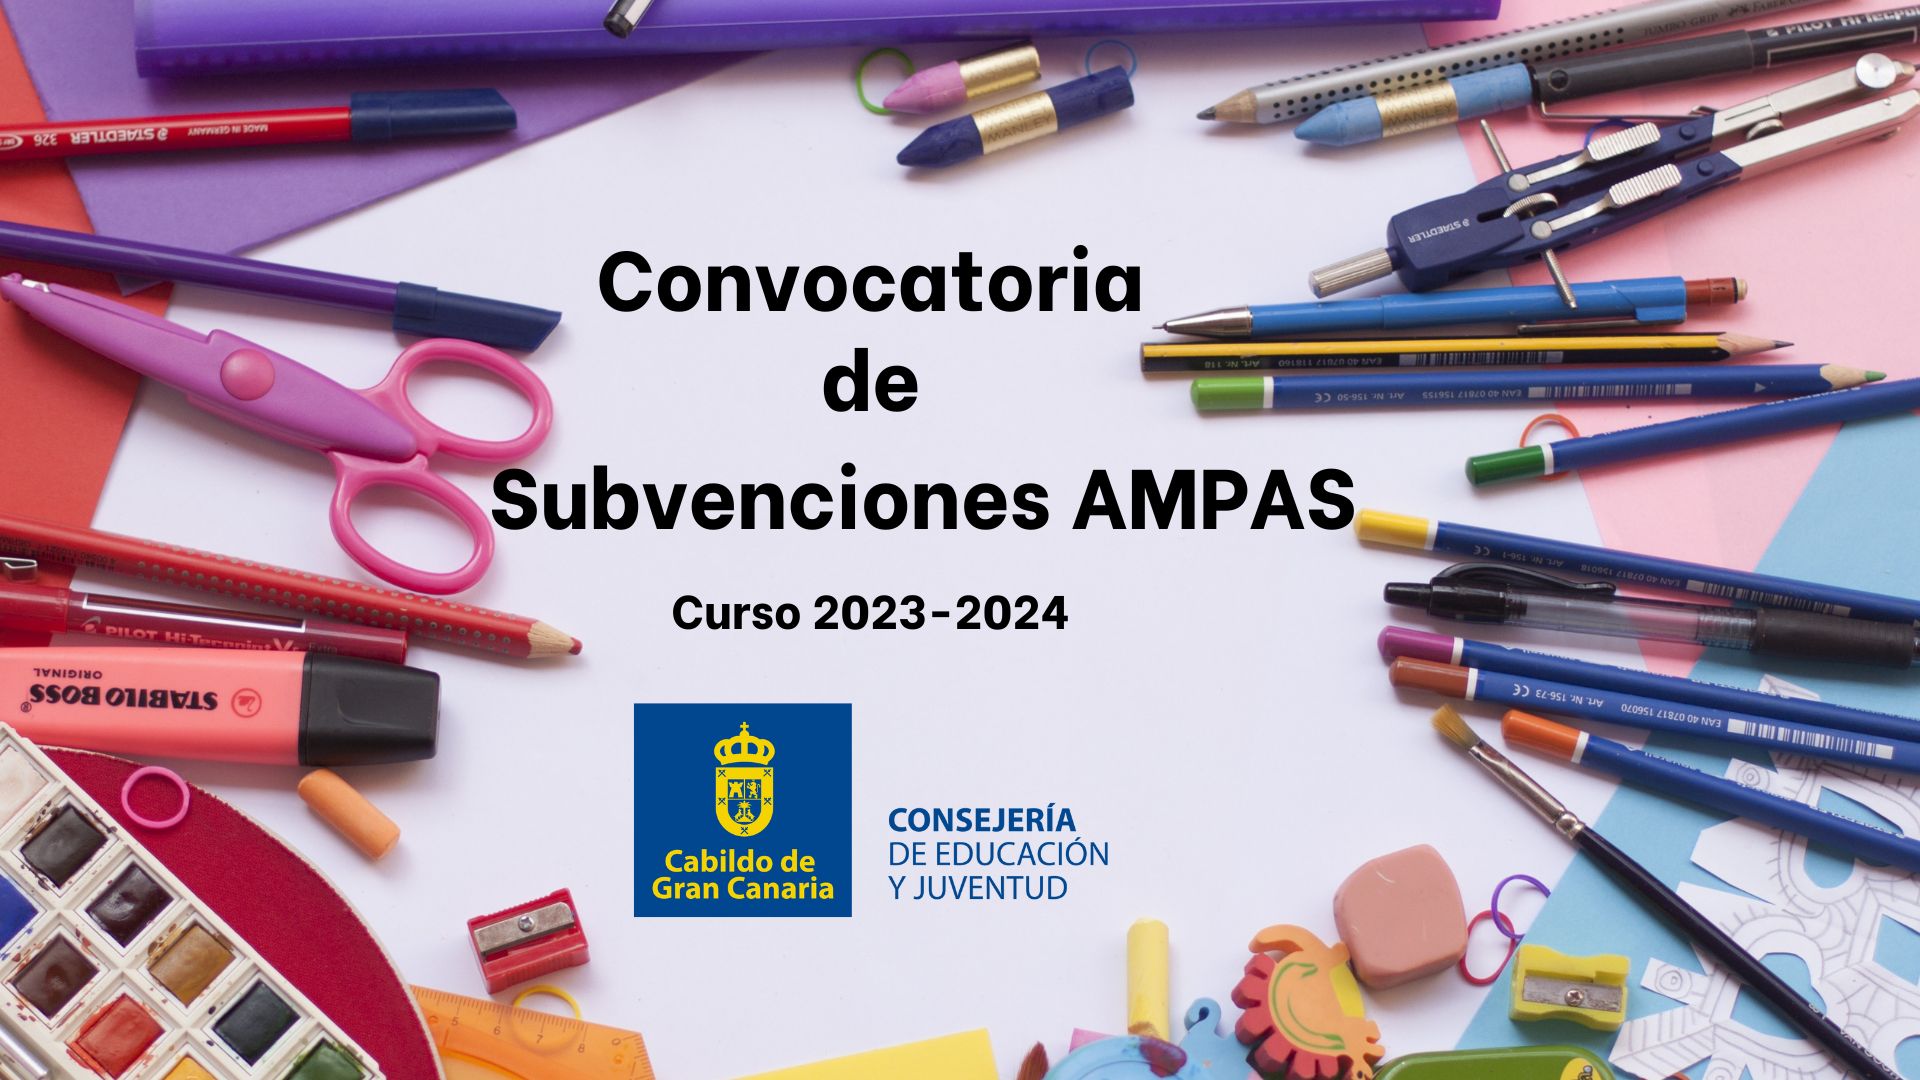 Convocatoria de subvenciones AMPAS 2023 - 2024